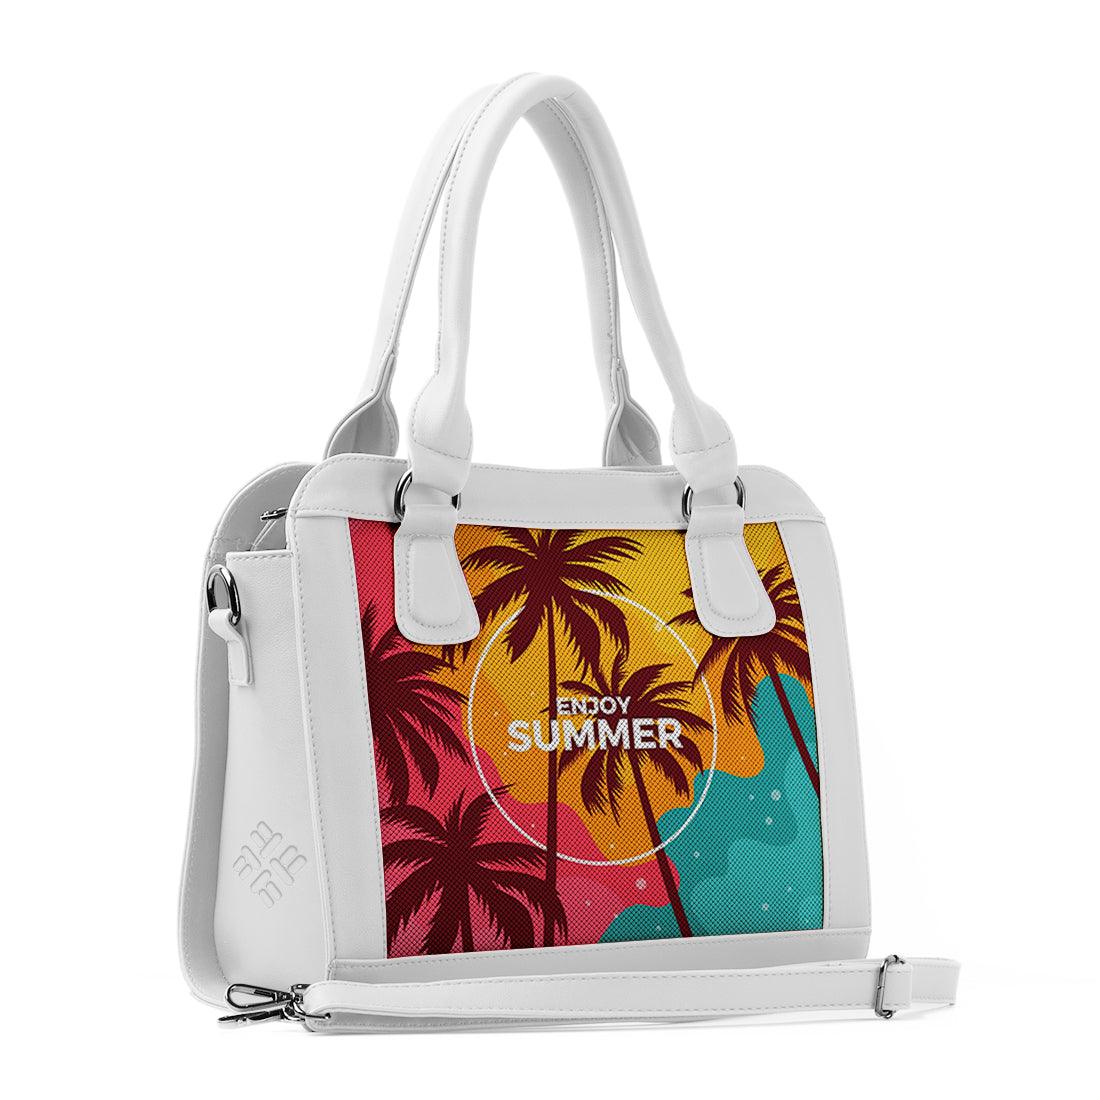 White Travel Hobo Bag Enjoy Summer - CANVAEGYPT